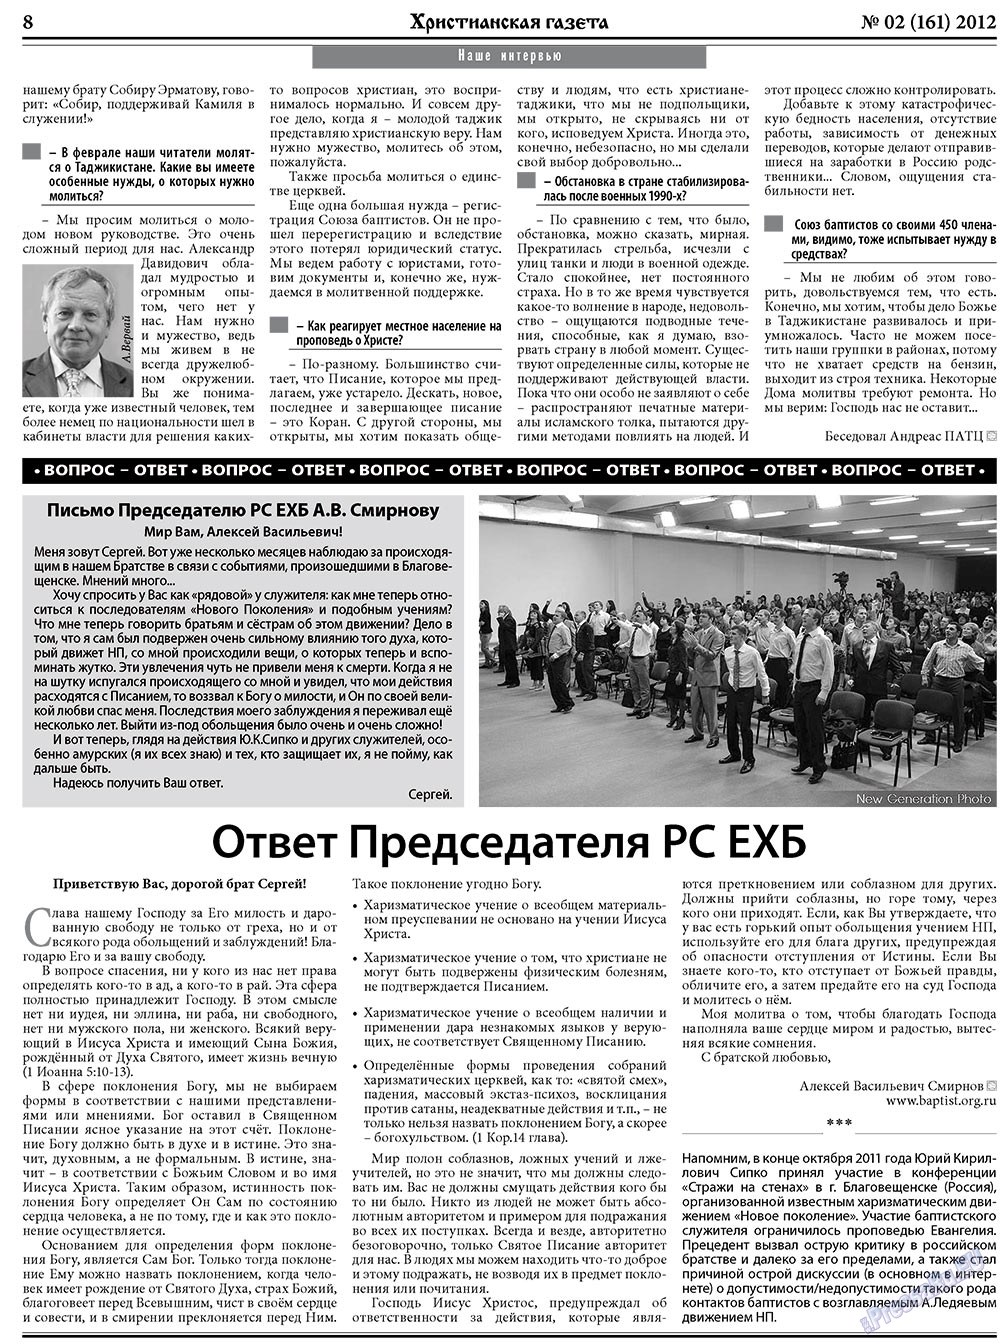 Христианская газета, газета. 2012 №2 стр.8